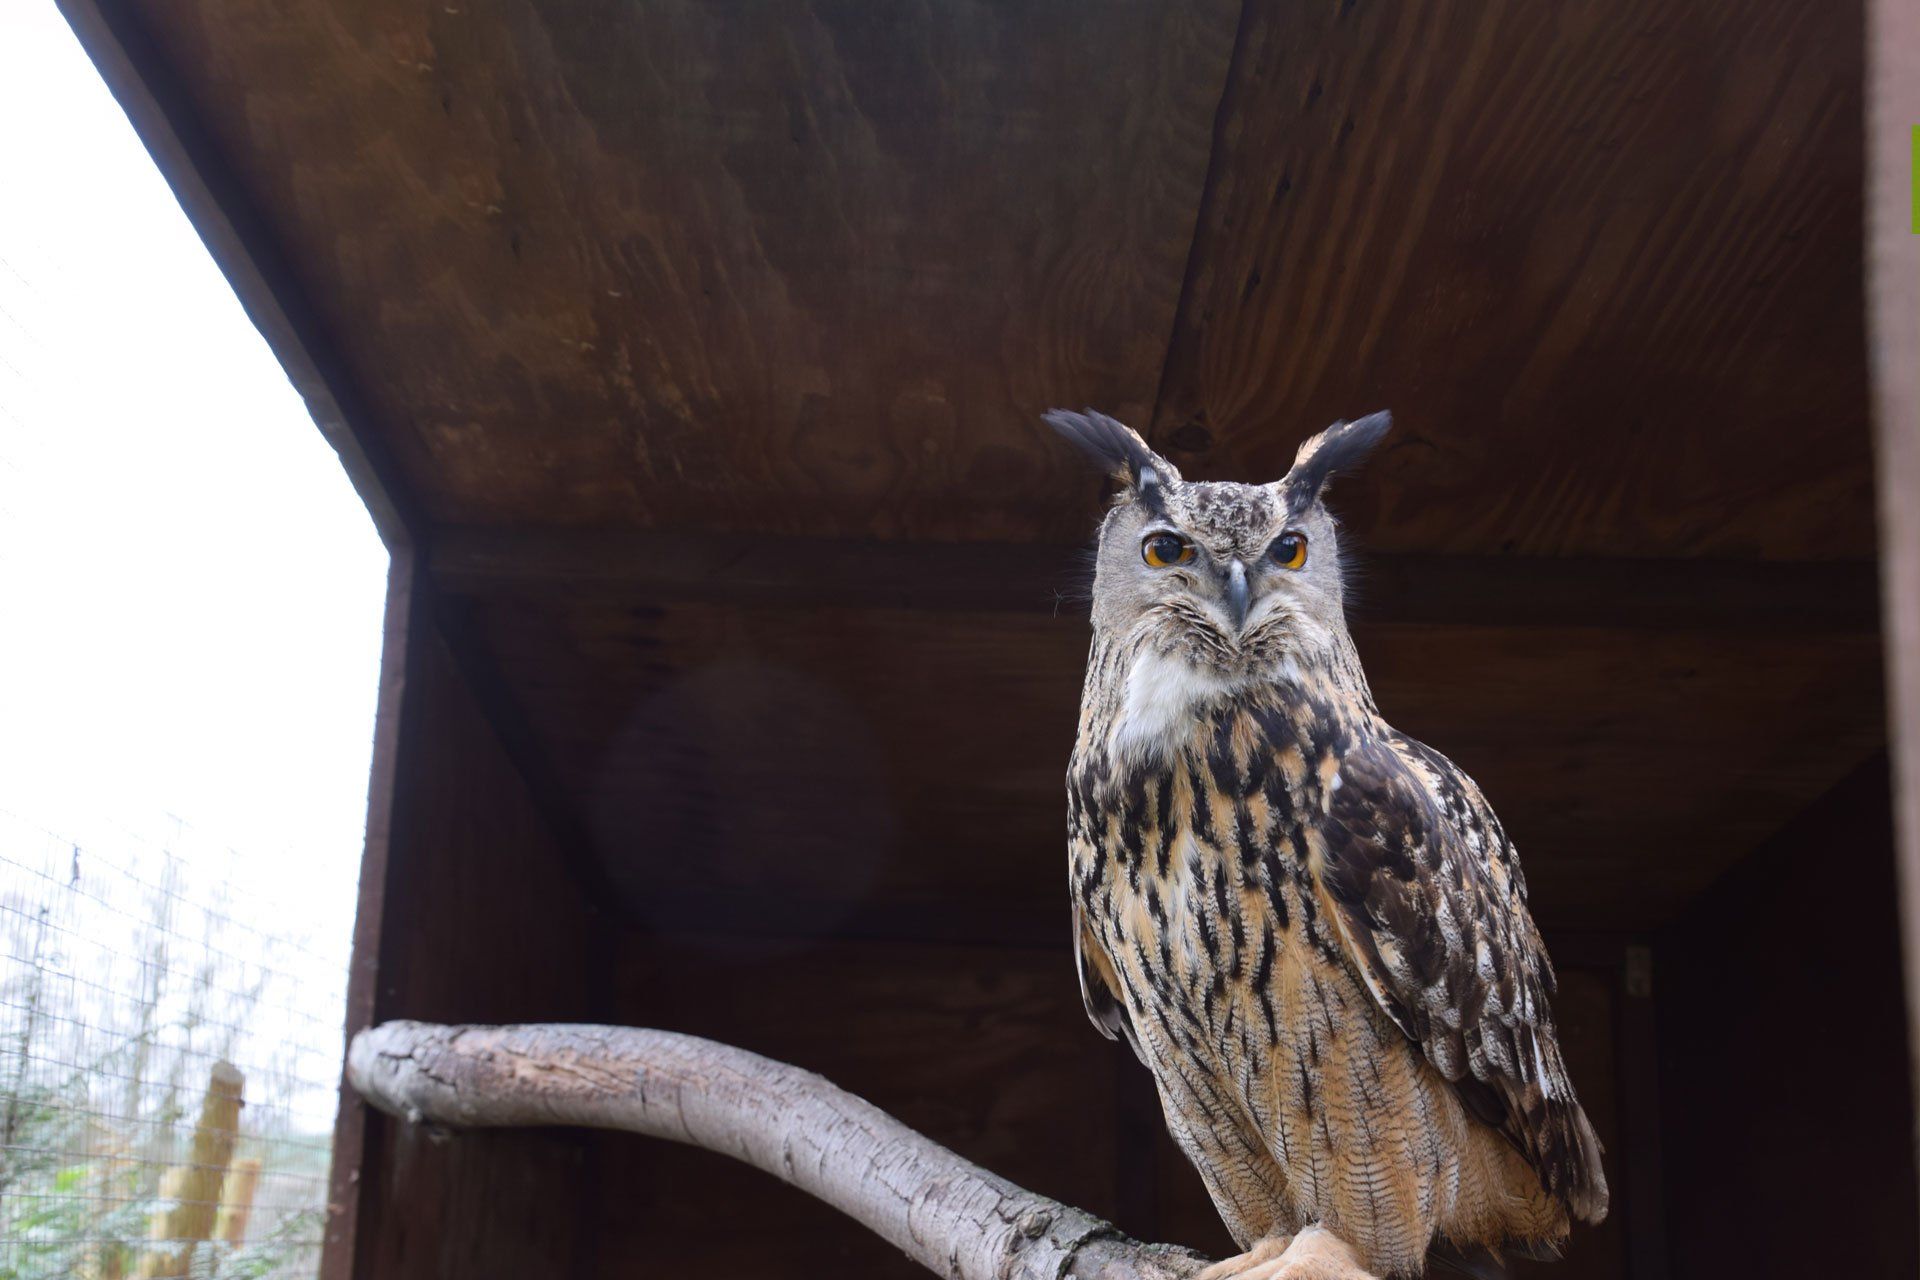 The European Eagle Owl